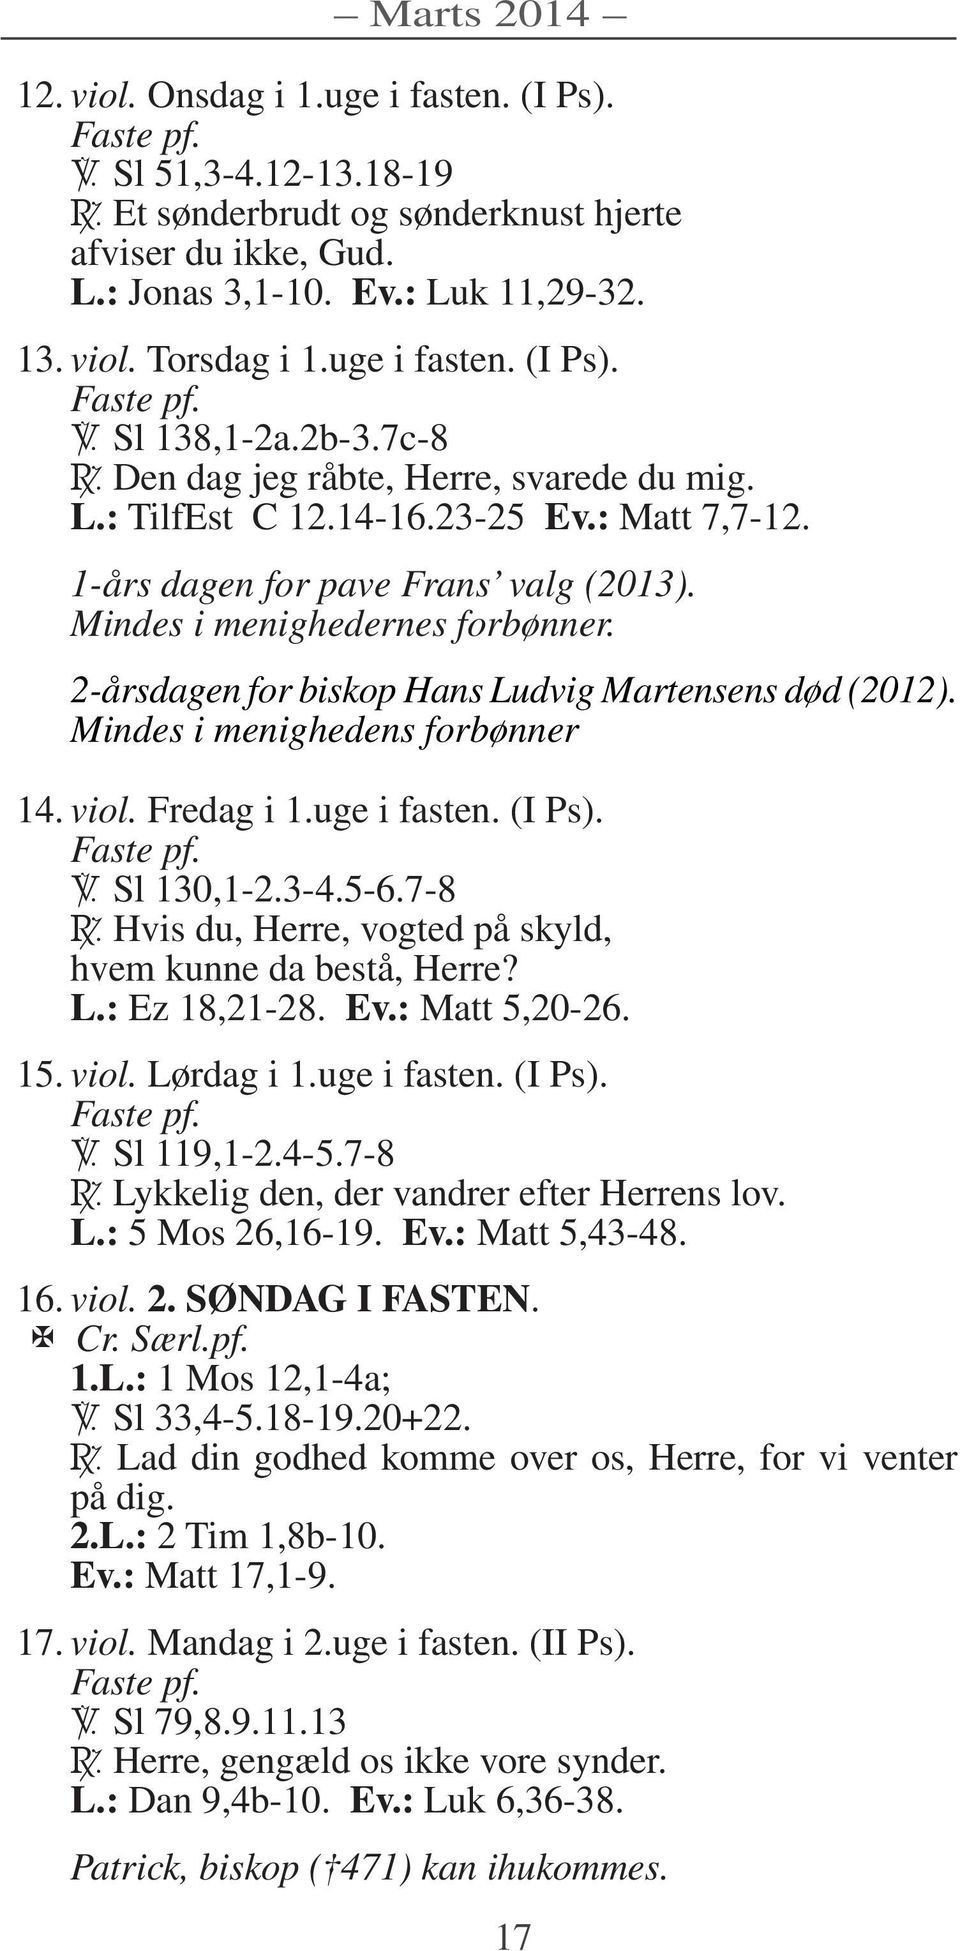 Mindes i menighedernes forbønner. 2-årsdagen for biskop Hans Ludvig Martensens død (2012). Mindes i menighedens forbønner 14. viol. Fredag i 1.uge i fasten. (I Ps). Faste pf. Sl 130,1-2.3-4.5-6.